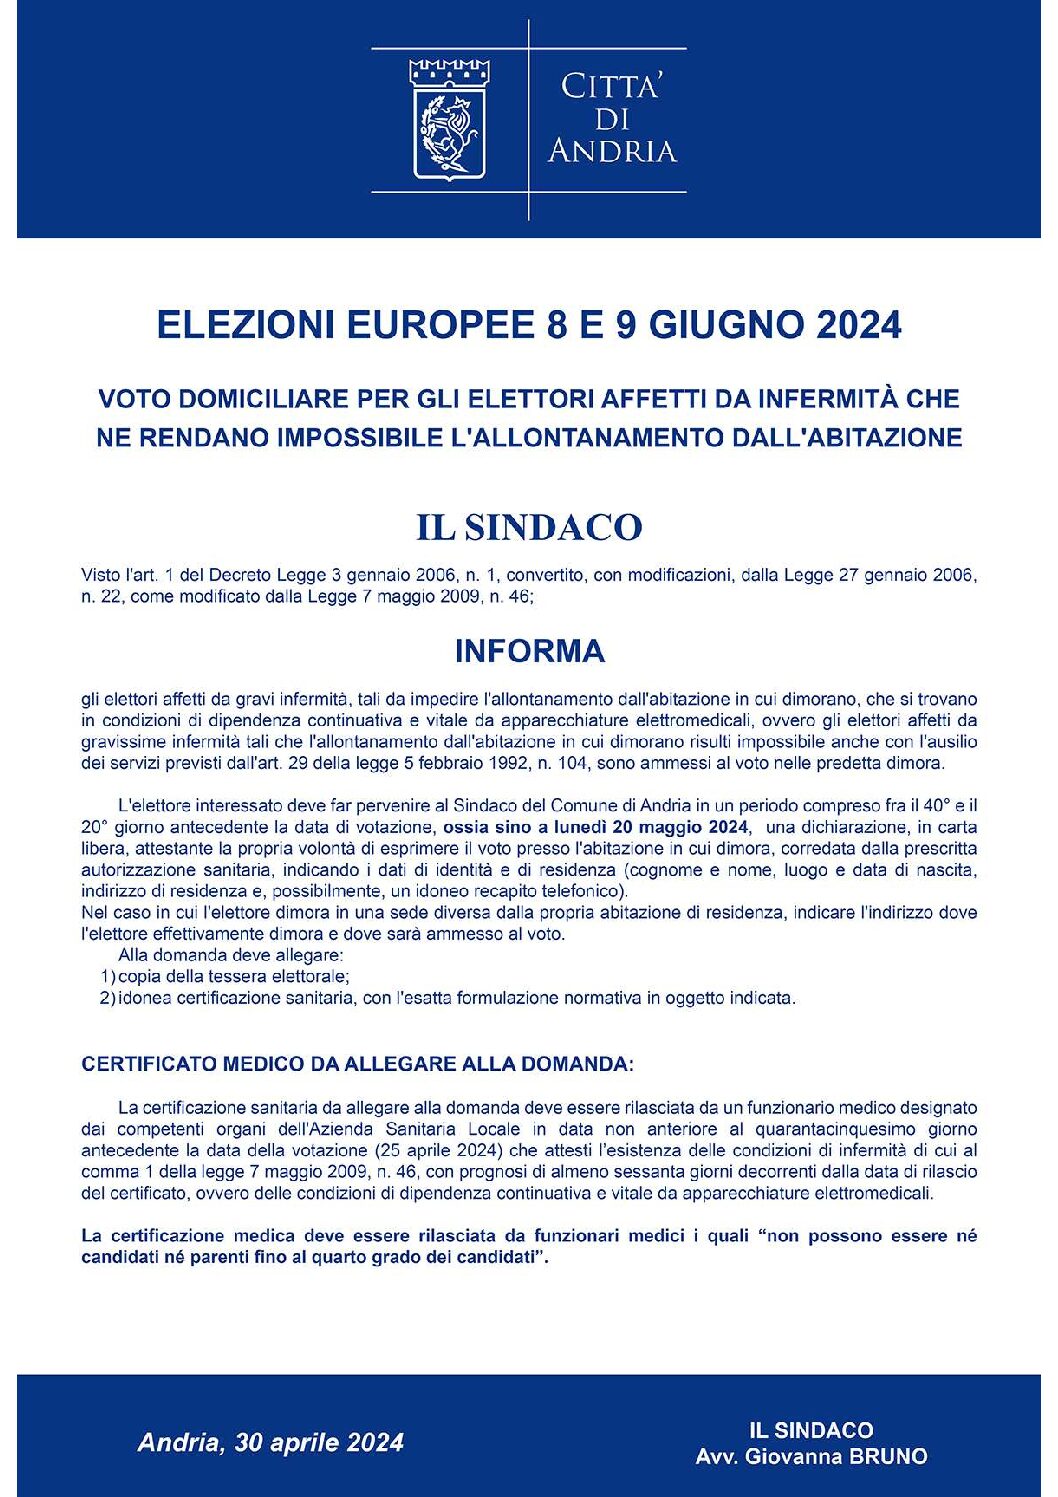 ELEZIONE DEI MEMBRI DEL PARLAMENTO EUROPEO SPETTANTI ALL’ITALIA DI SABATO 8 E DOMENICA 9 GIUGNO 2024